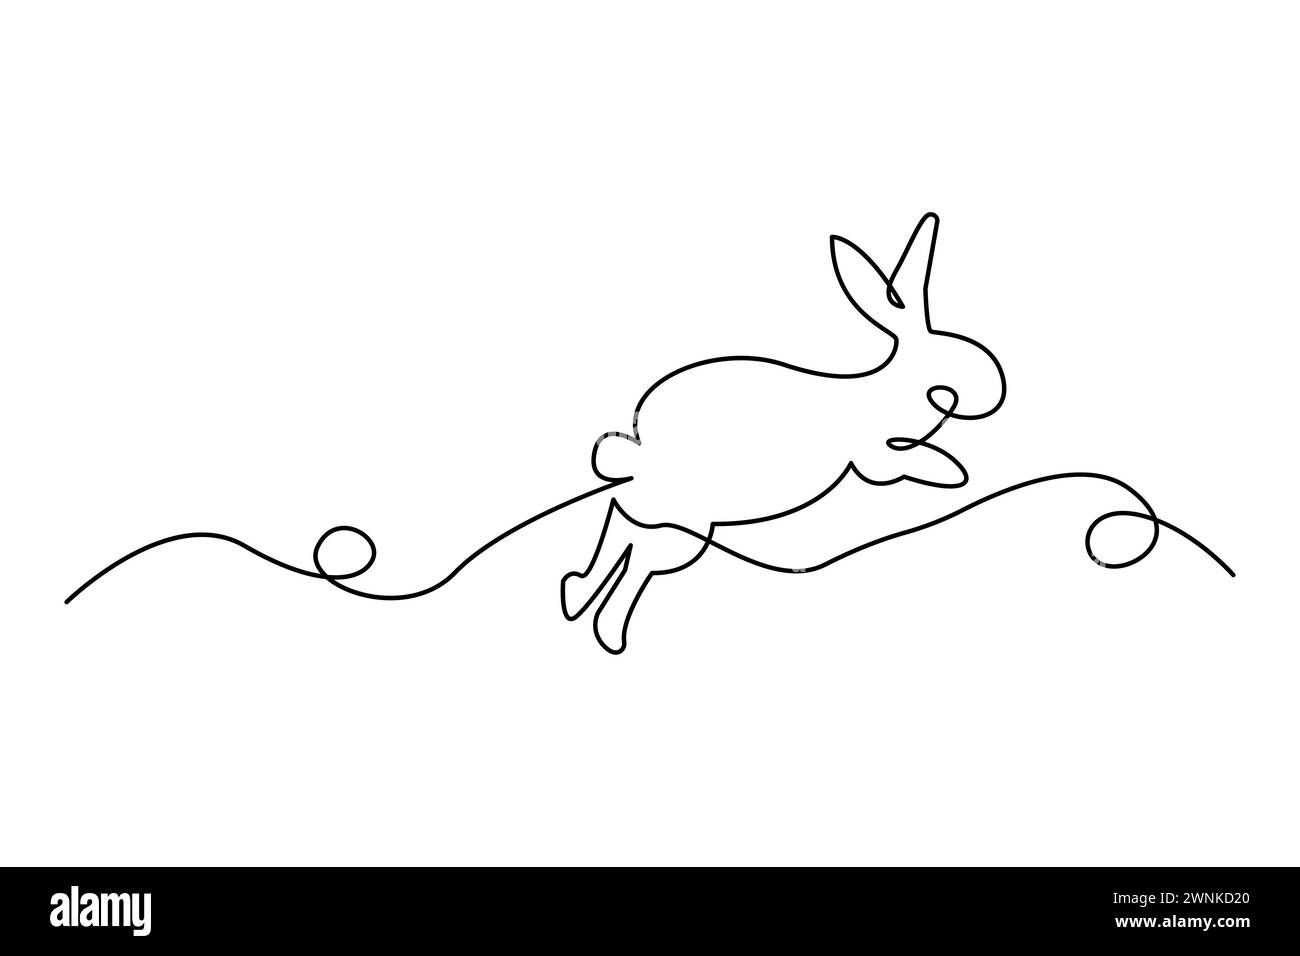 Dessin minimaliste d'une ligne d'un lapin bondissant. Ligne continue élégante Illustration vectorielle. SPE 10. Illustration de Vecteur